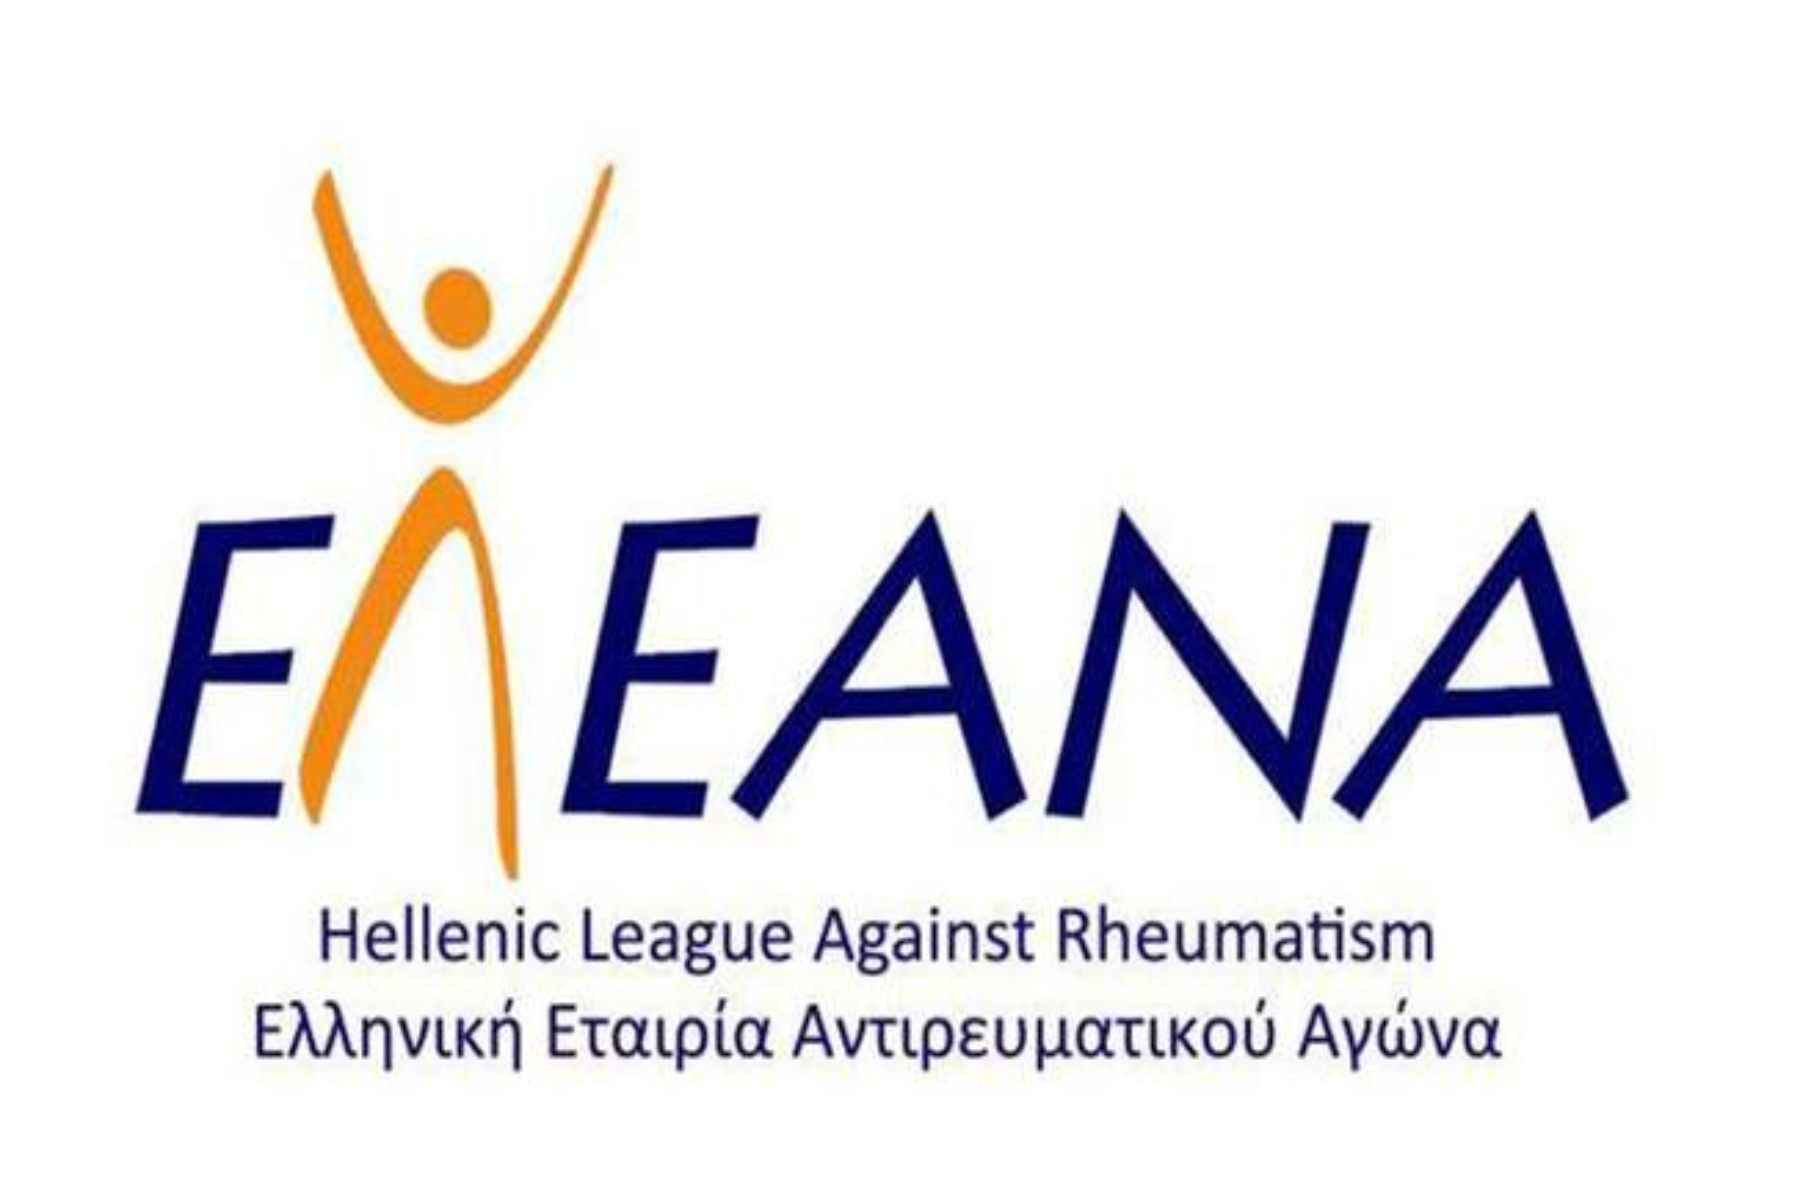 ΕΛ.Ε.ΑΝ.Α: Νέο Διοικητικό Συμβούλιο  διαμορφώθηκε στην Ελληνική Εταιρεία Αντιρευματικού Αγώνα